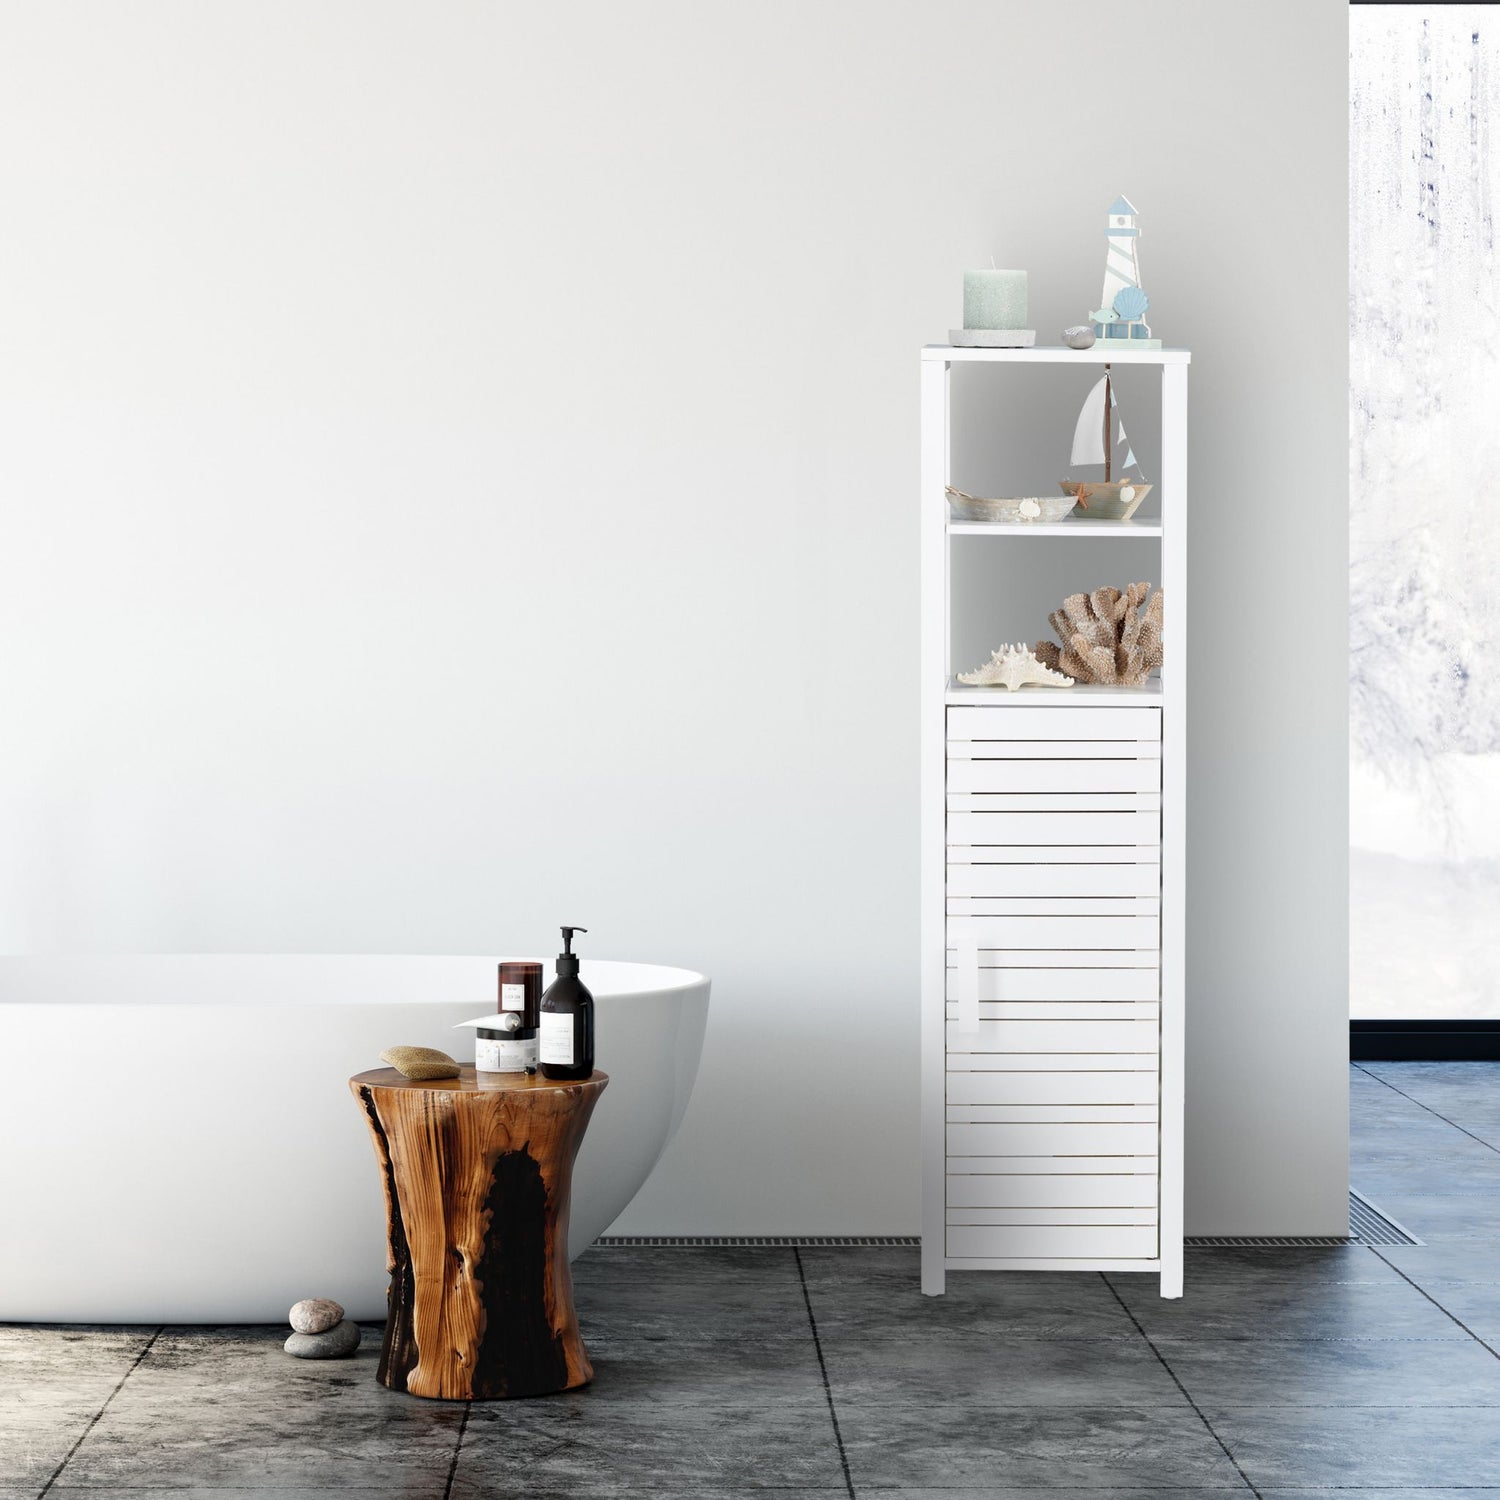 RelaxDays Bamboo Bathroom Shelf with Door Bamboo Bathrooms